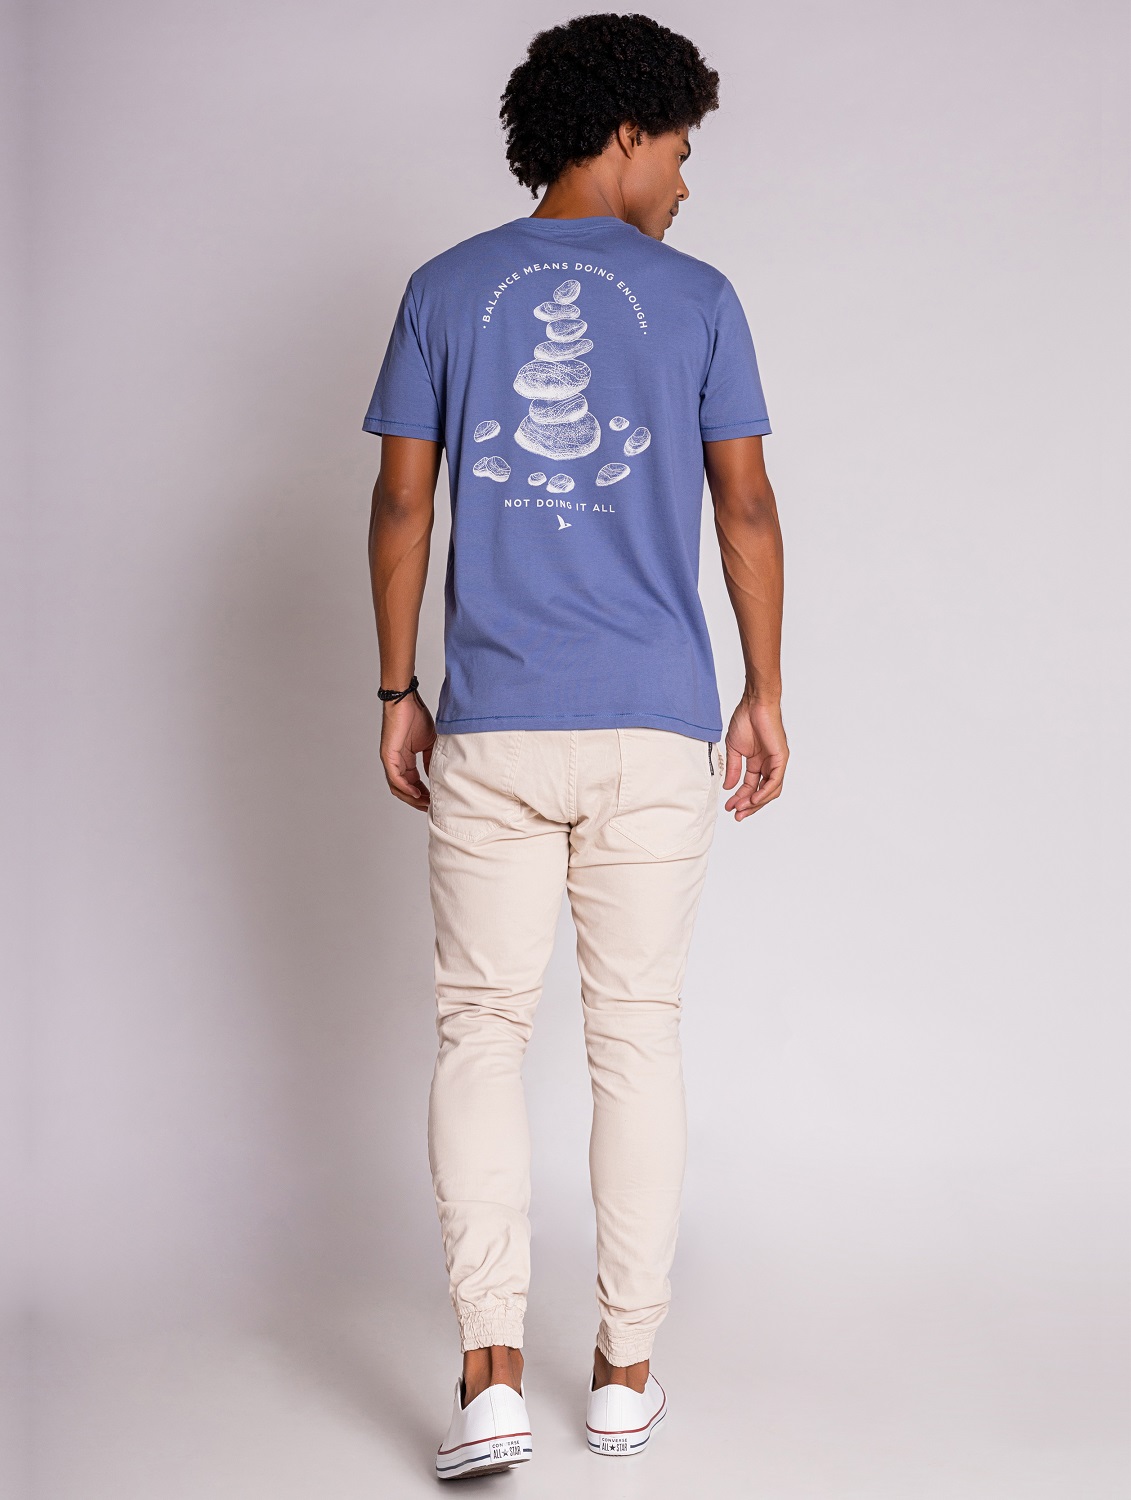 Camiseta Masculina Manga Curta em Algodão Azul  - OVBK